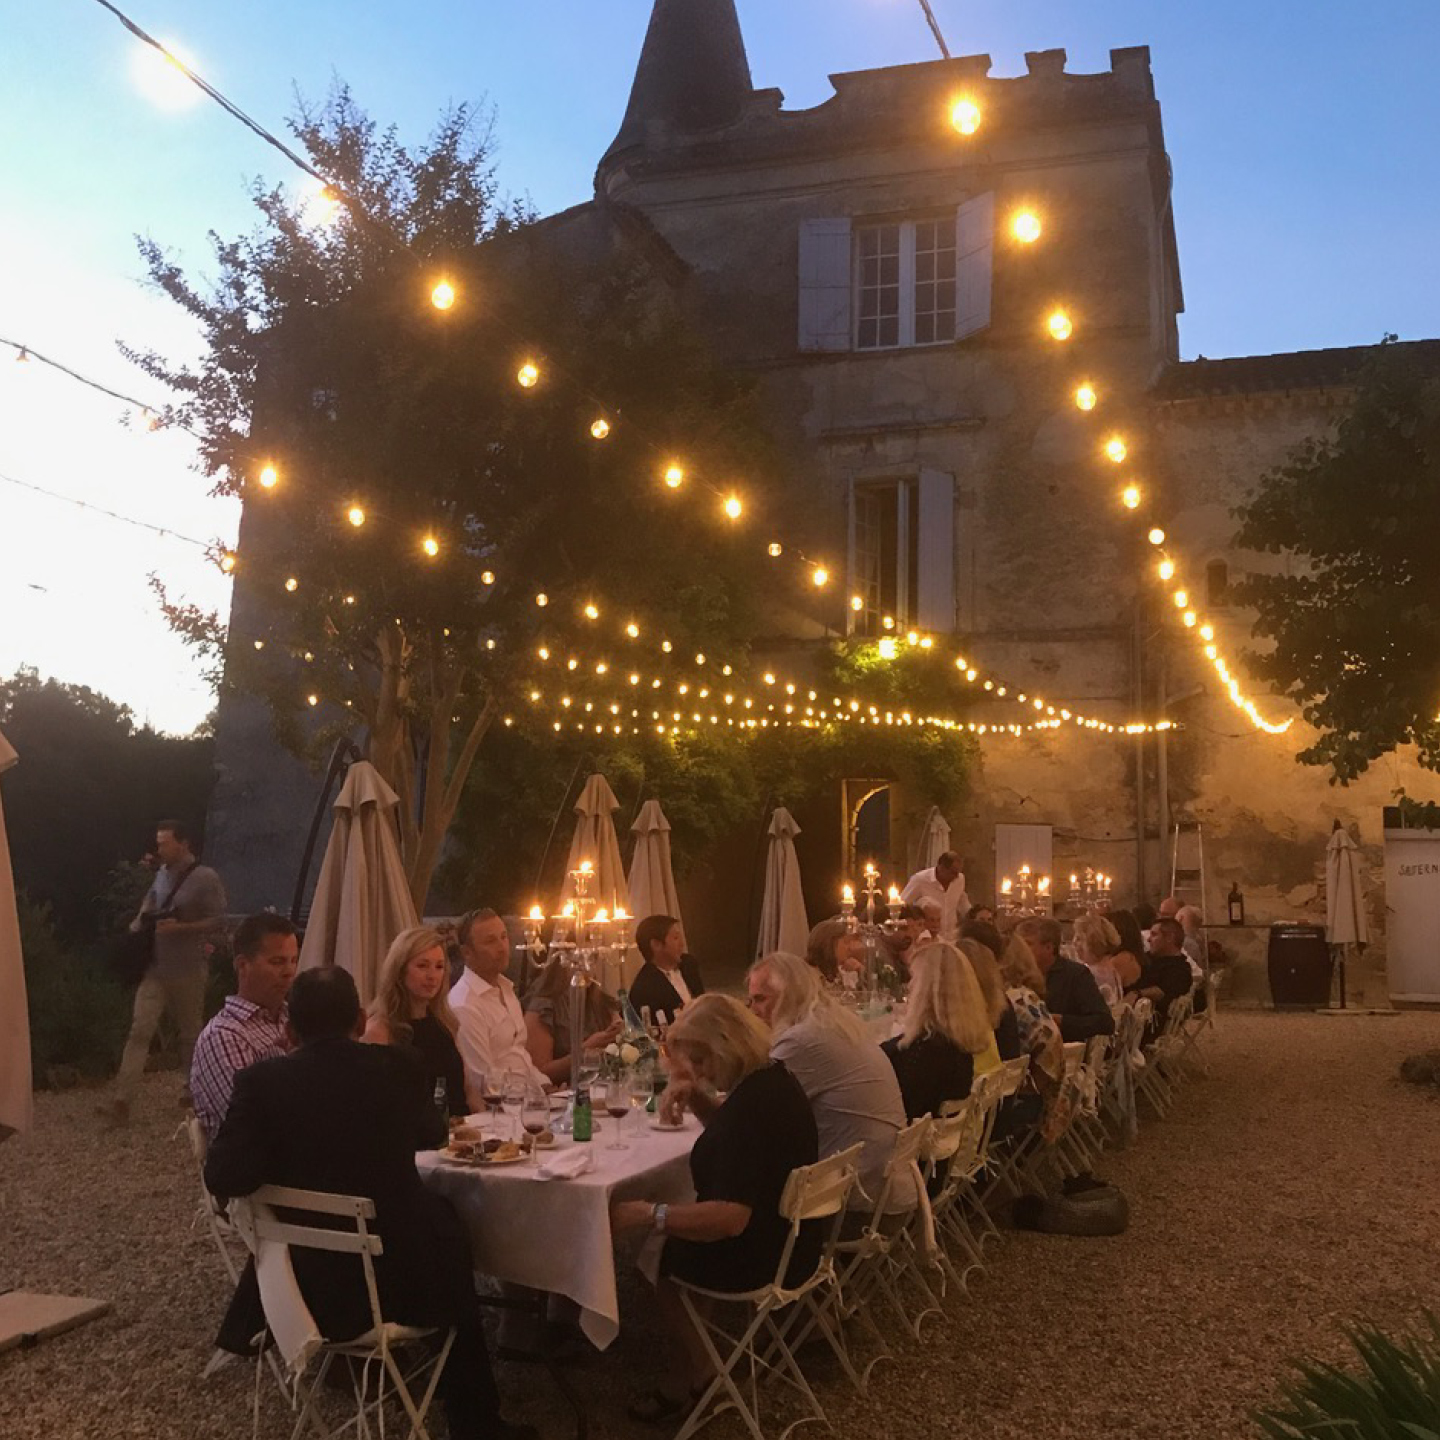 Château Lagorce, wedding venue in France, frenchweddingchateau.com